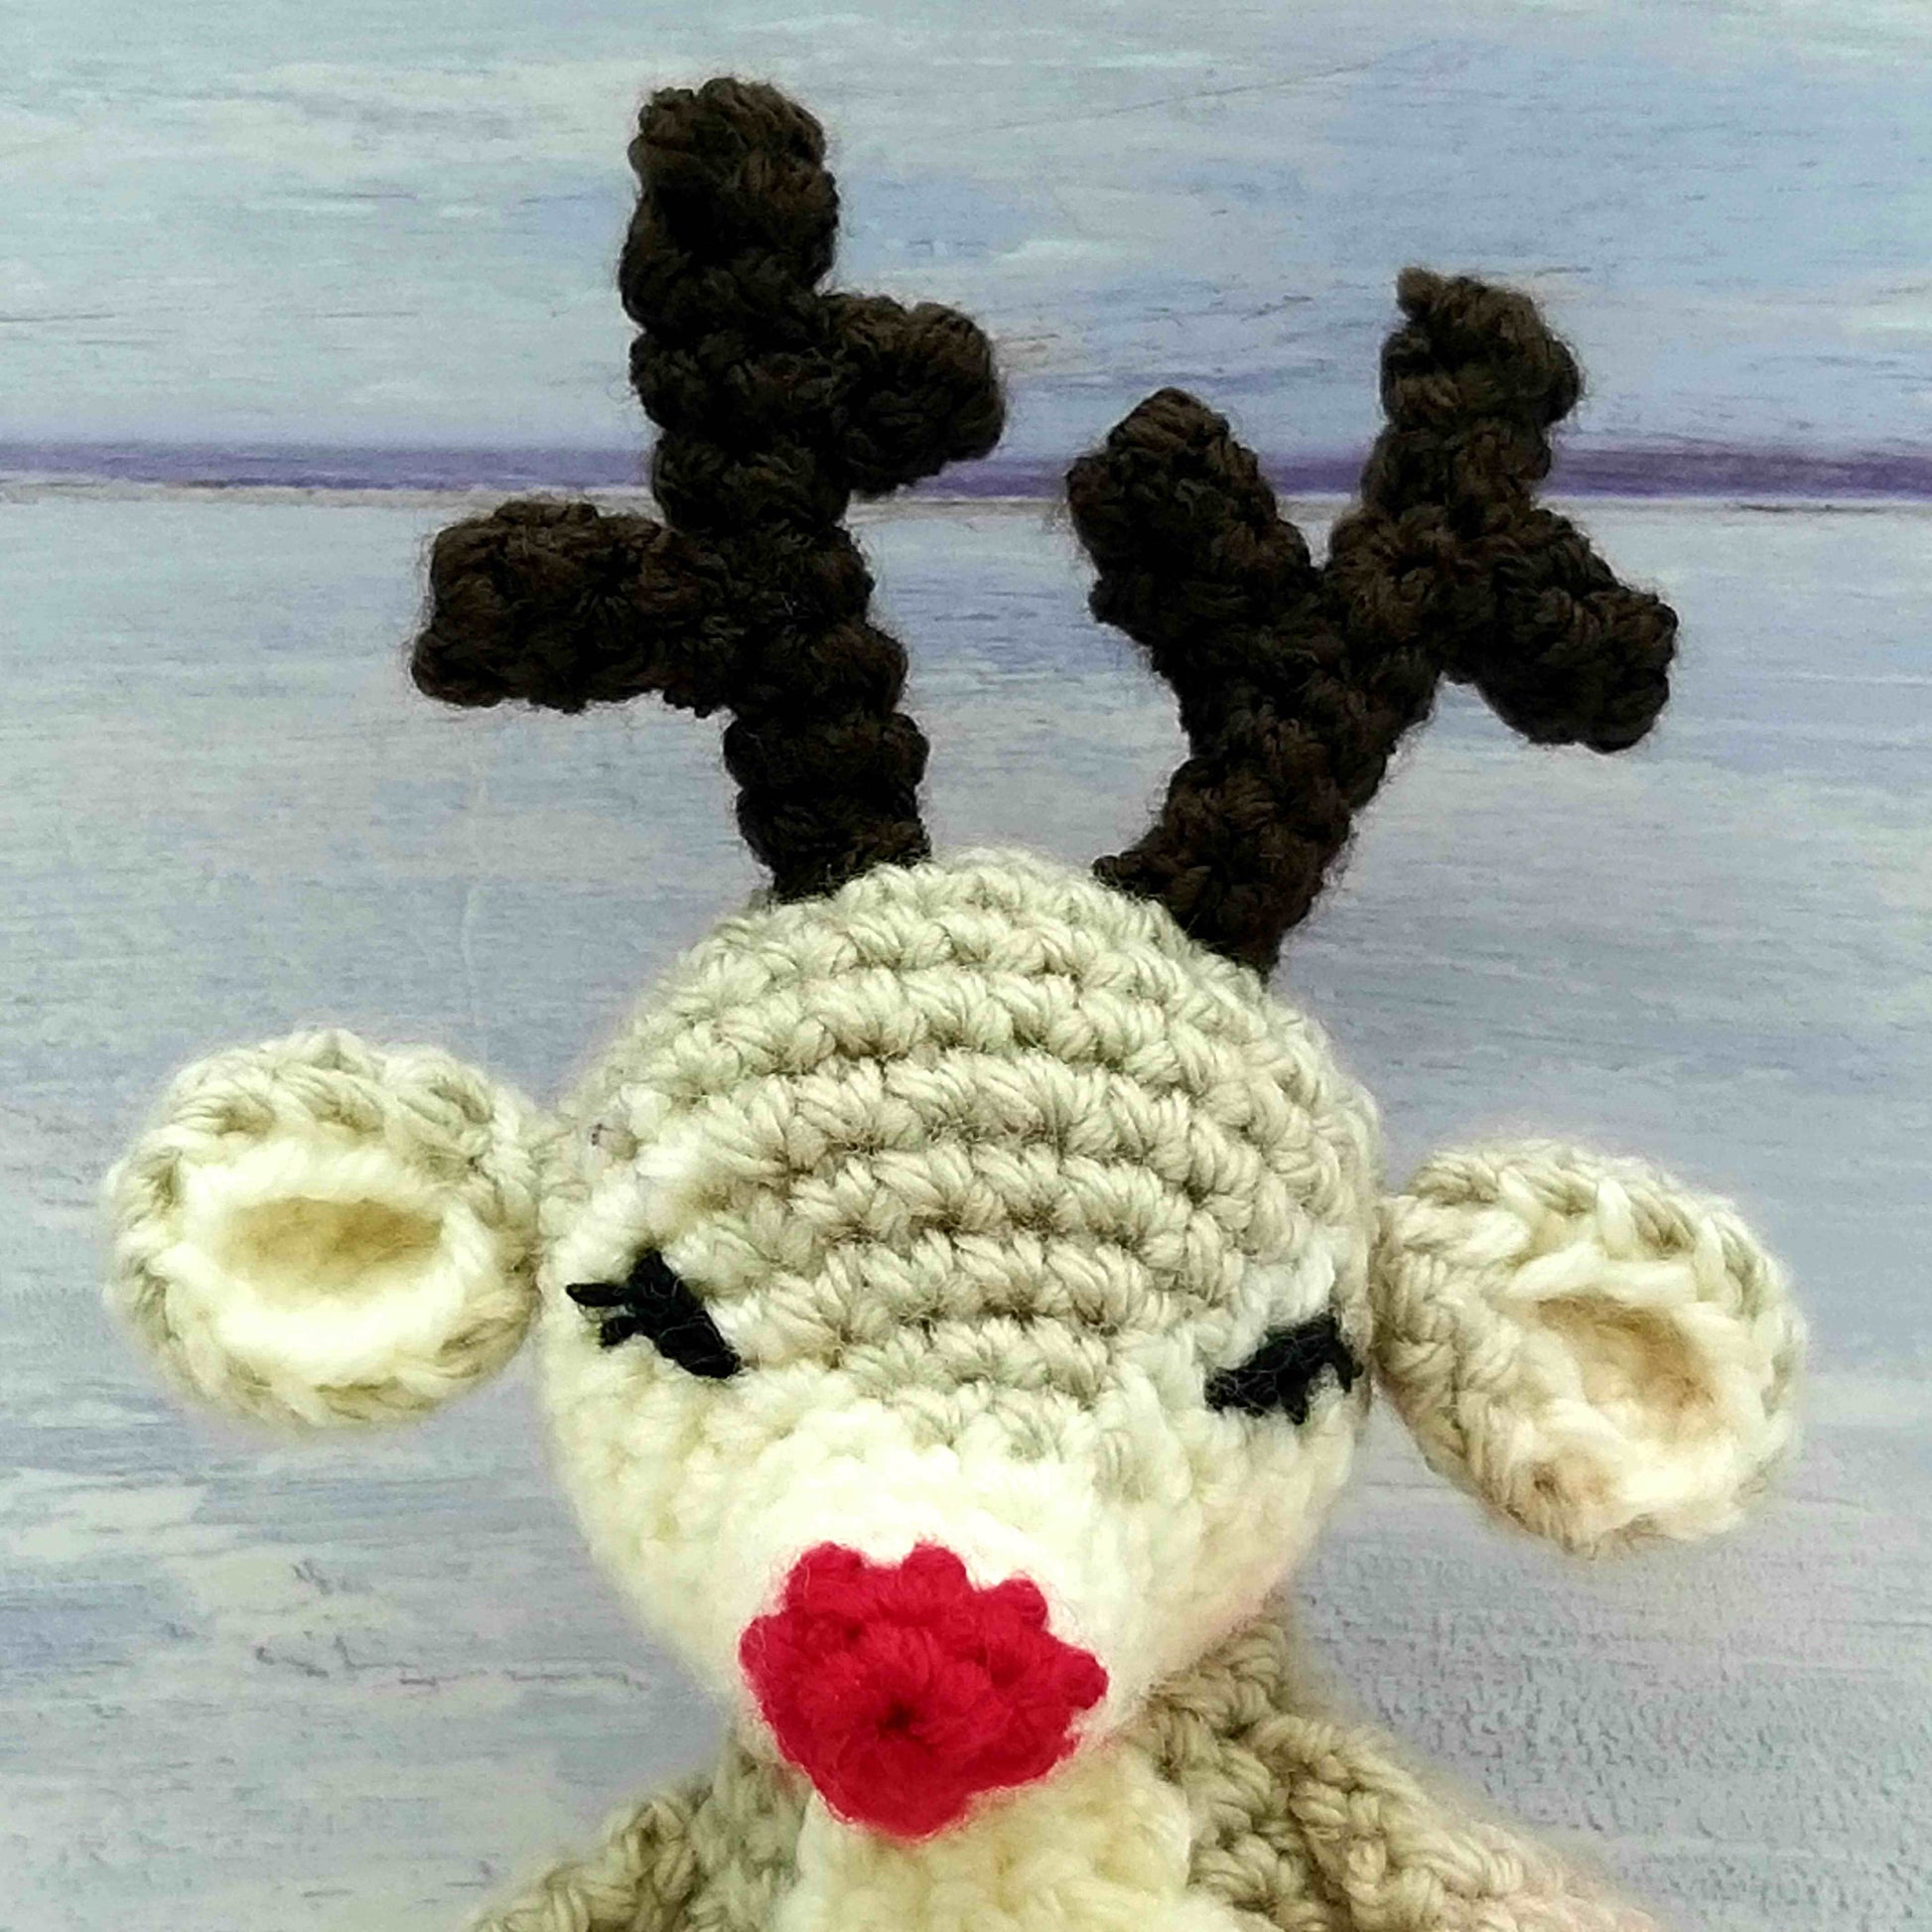 Baby Crochet Reindeer - stich detail in head